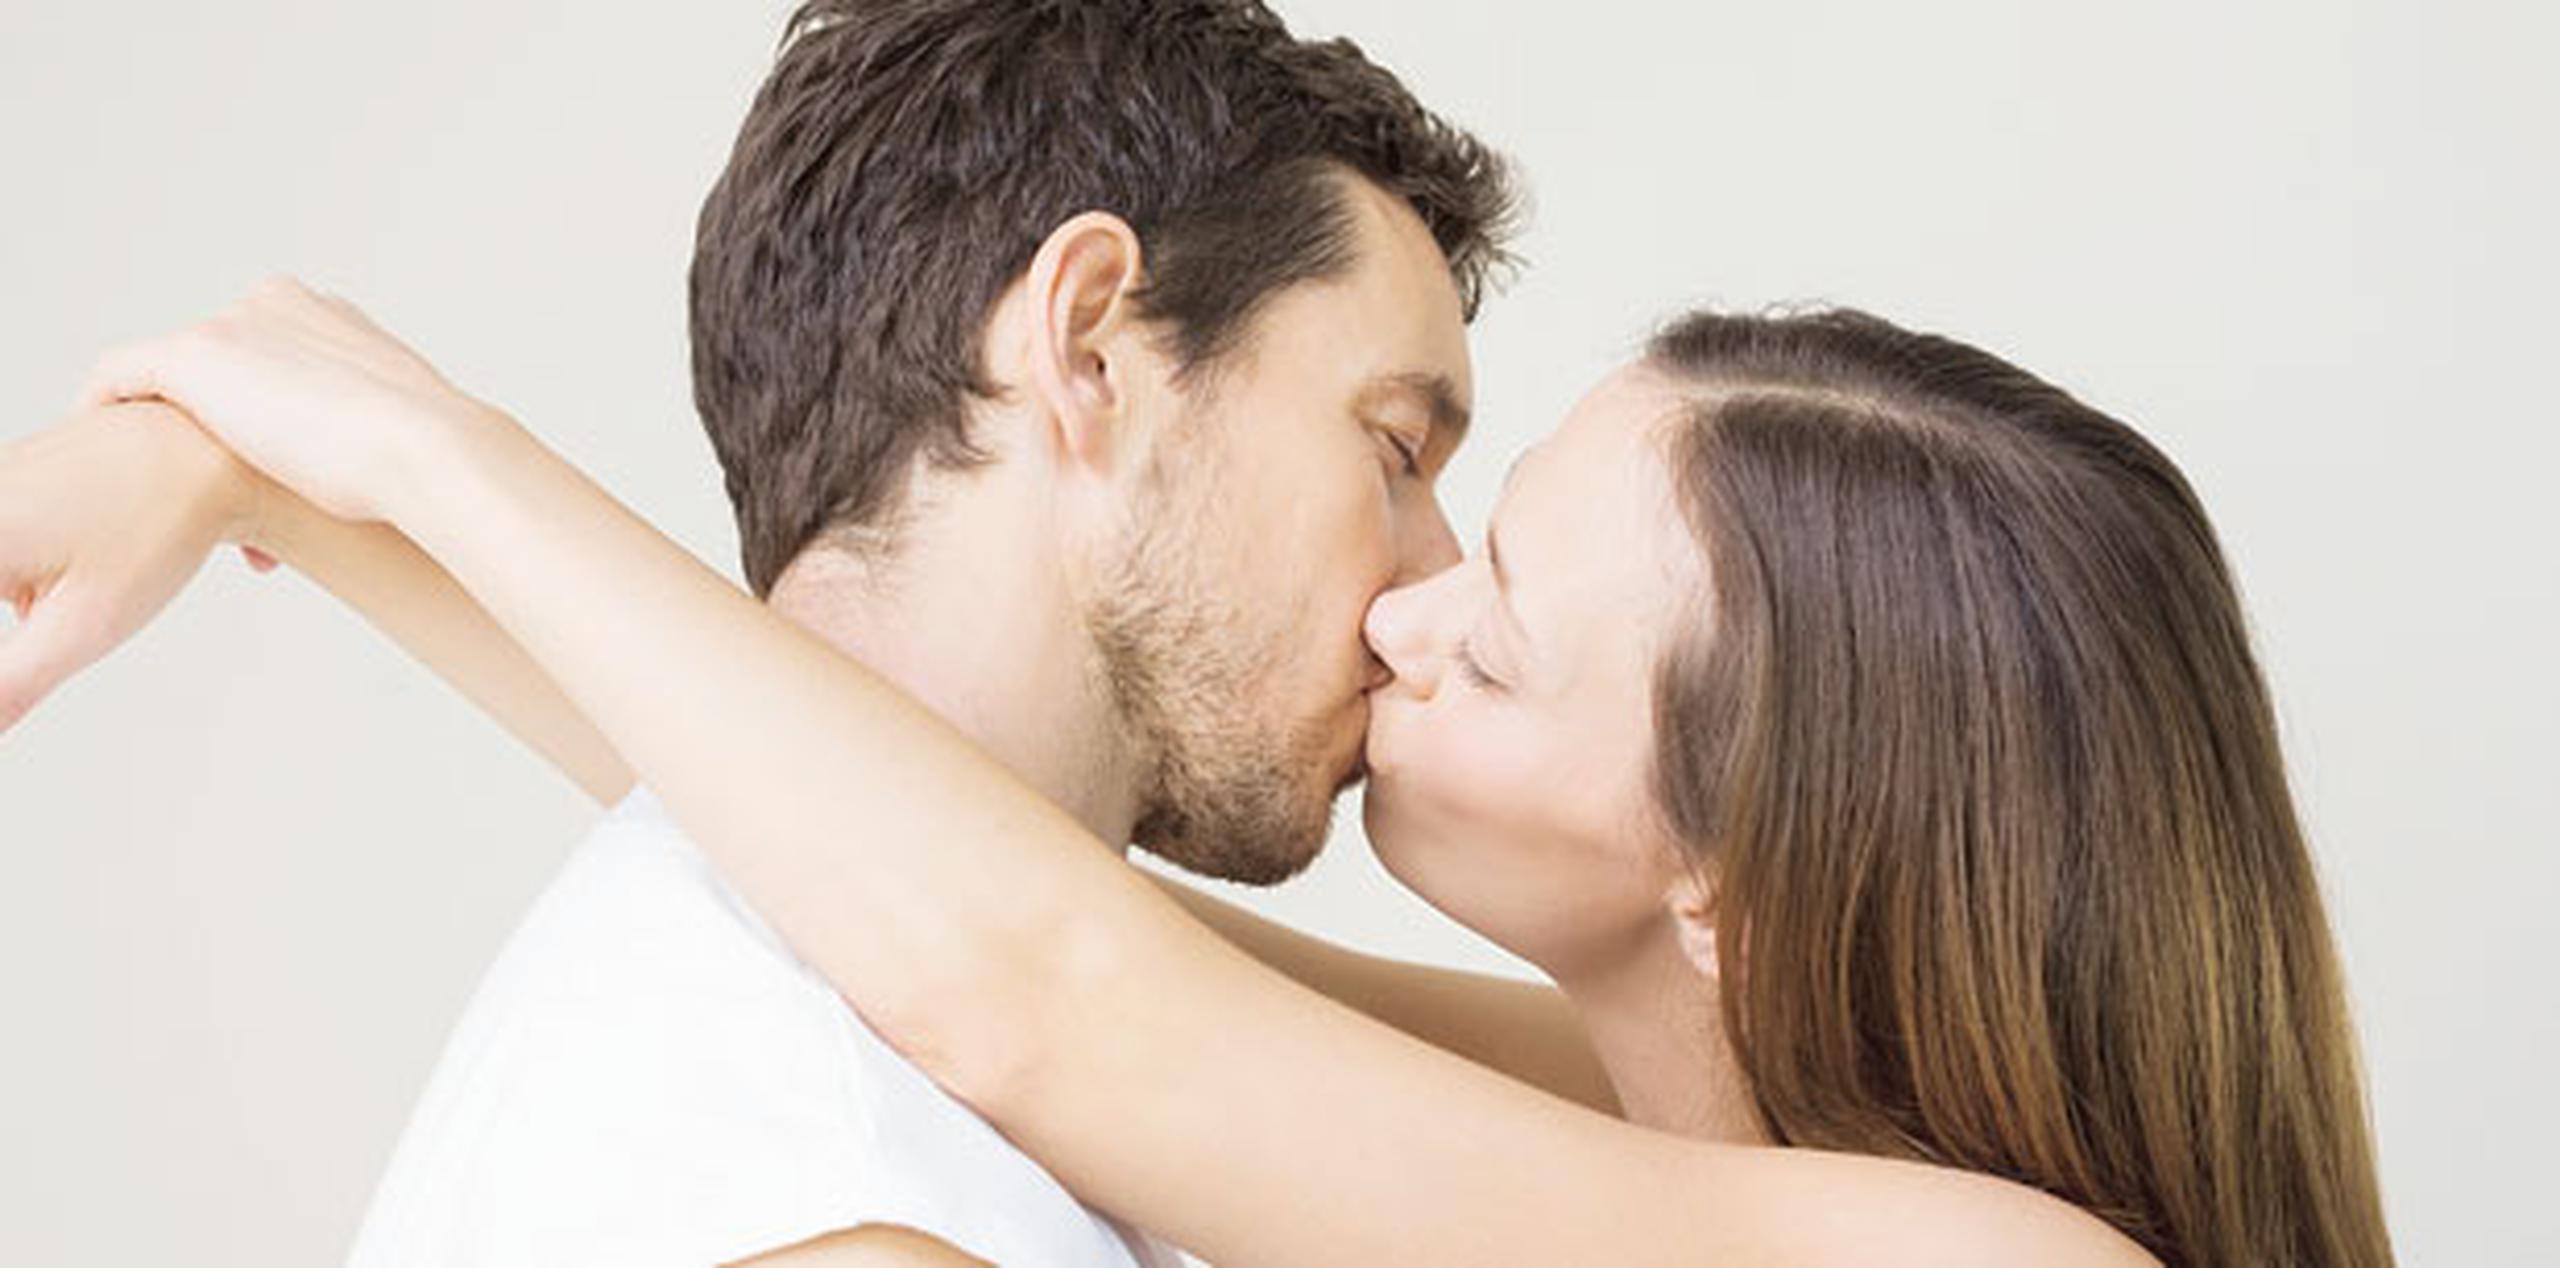 El riesgo de contraer el VPH aumenta con el número de parejas que te hayan besado al estilo “french kissing”. (Archivo)